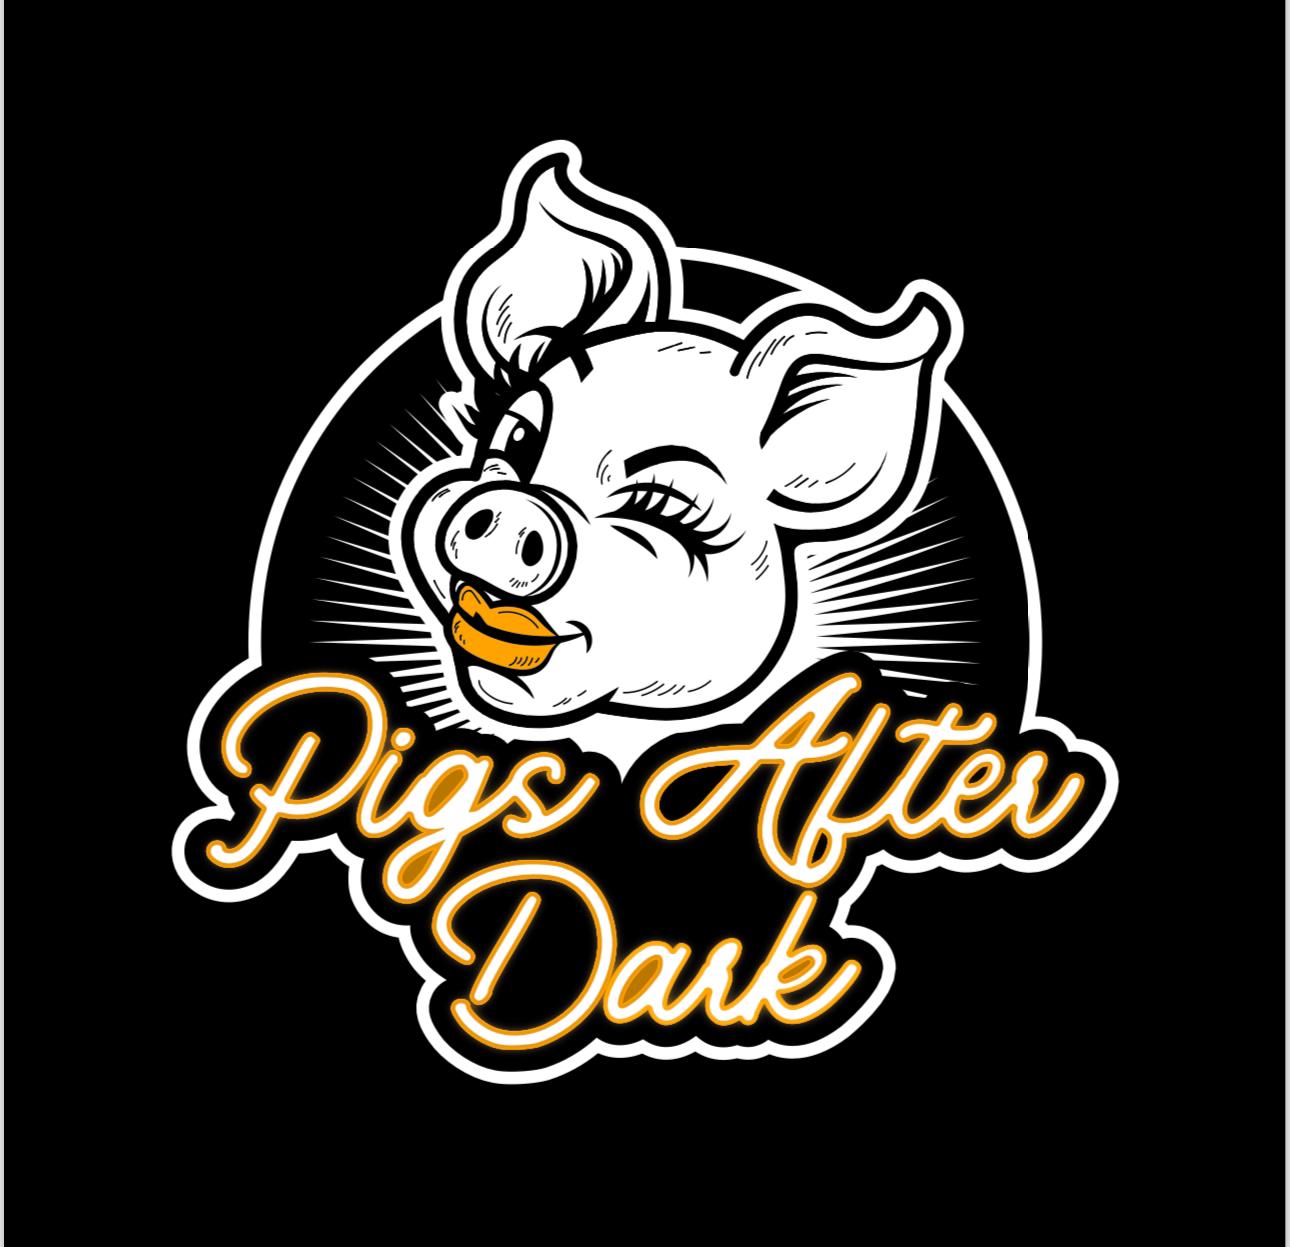 Piggies After Dark : Ravishing